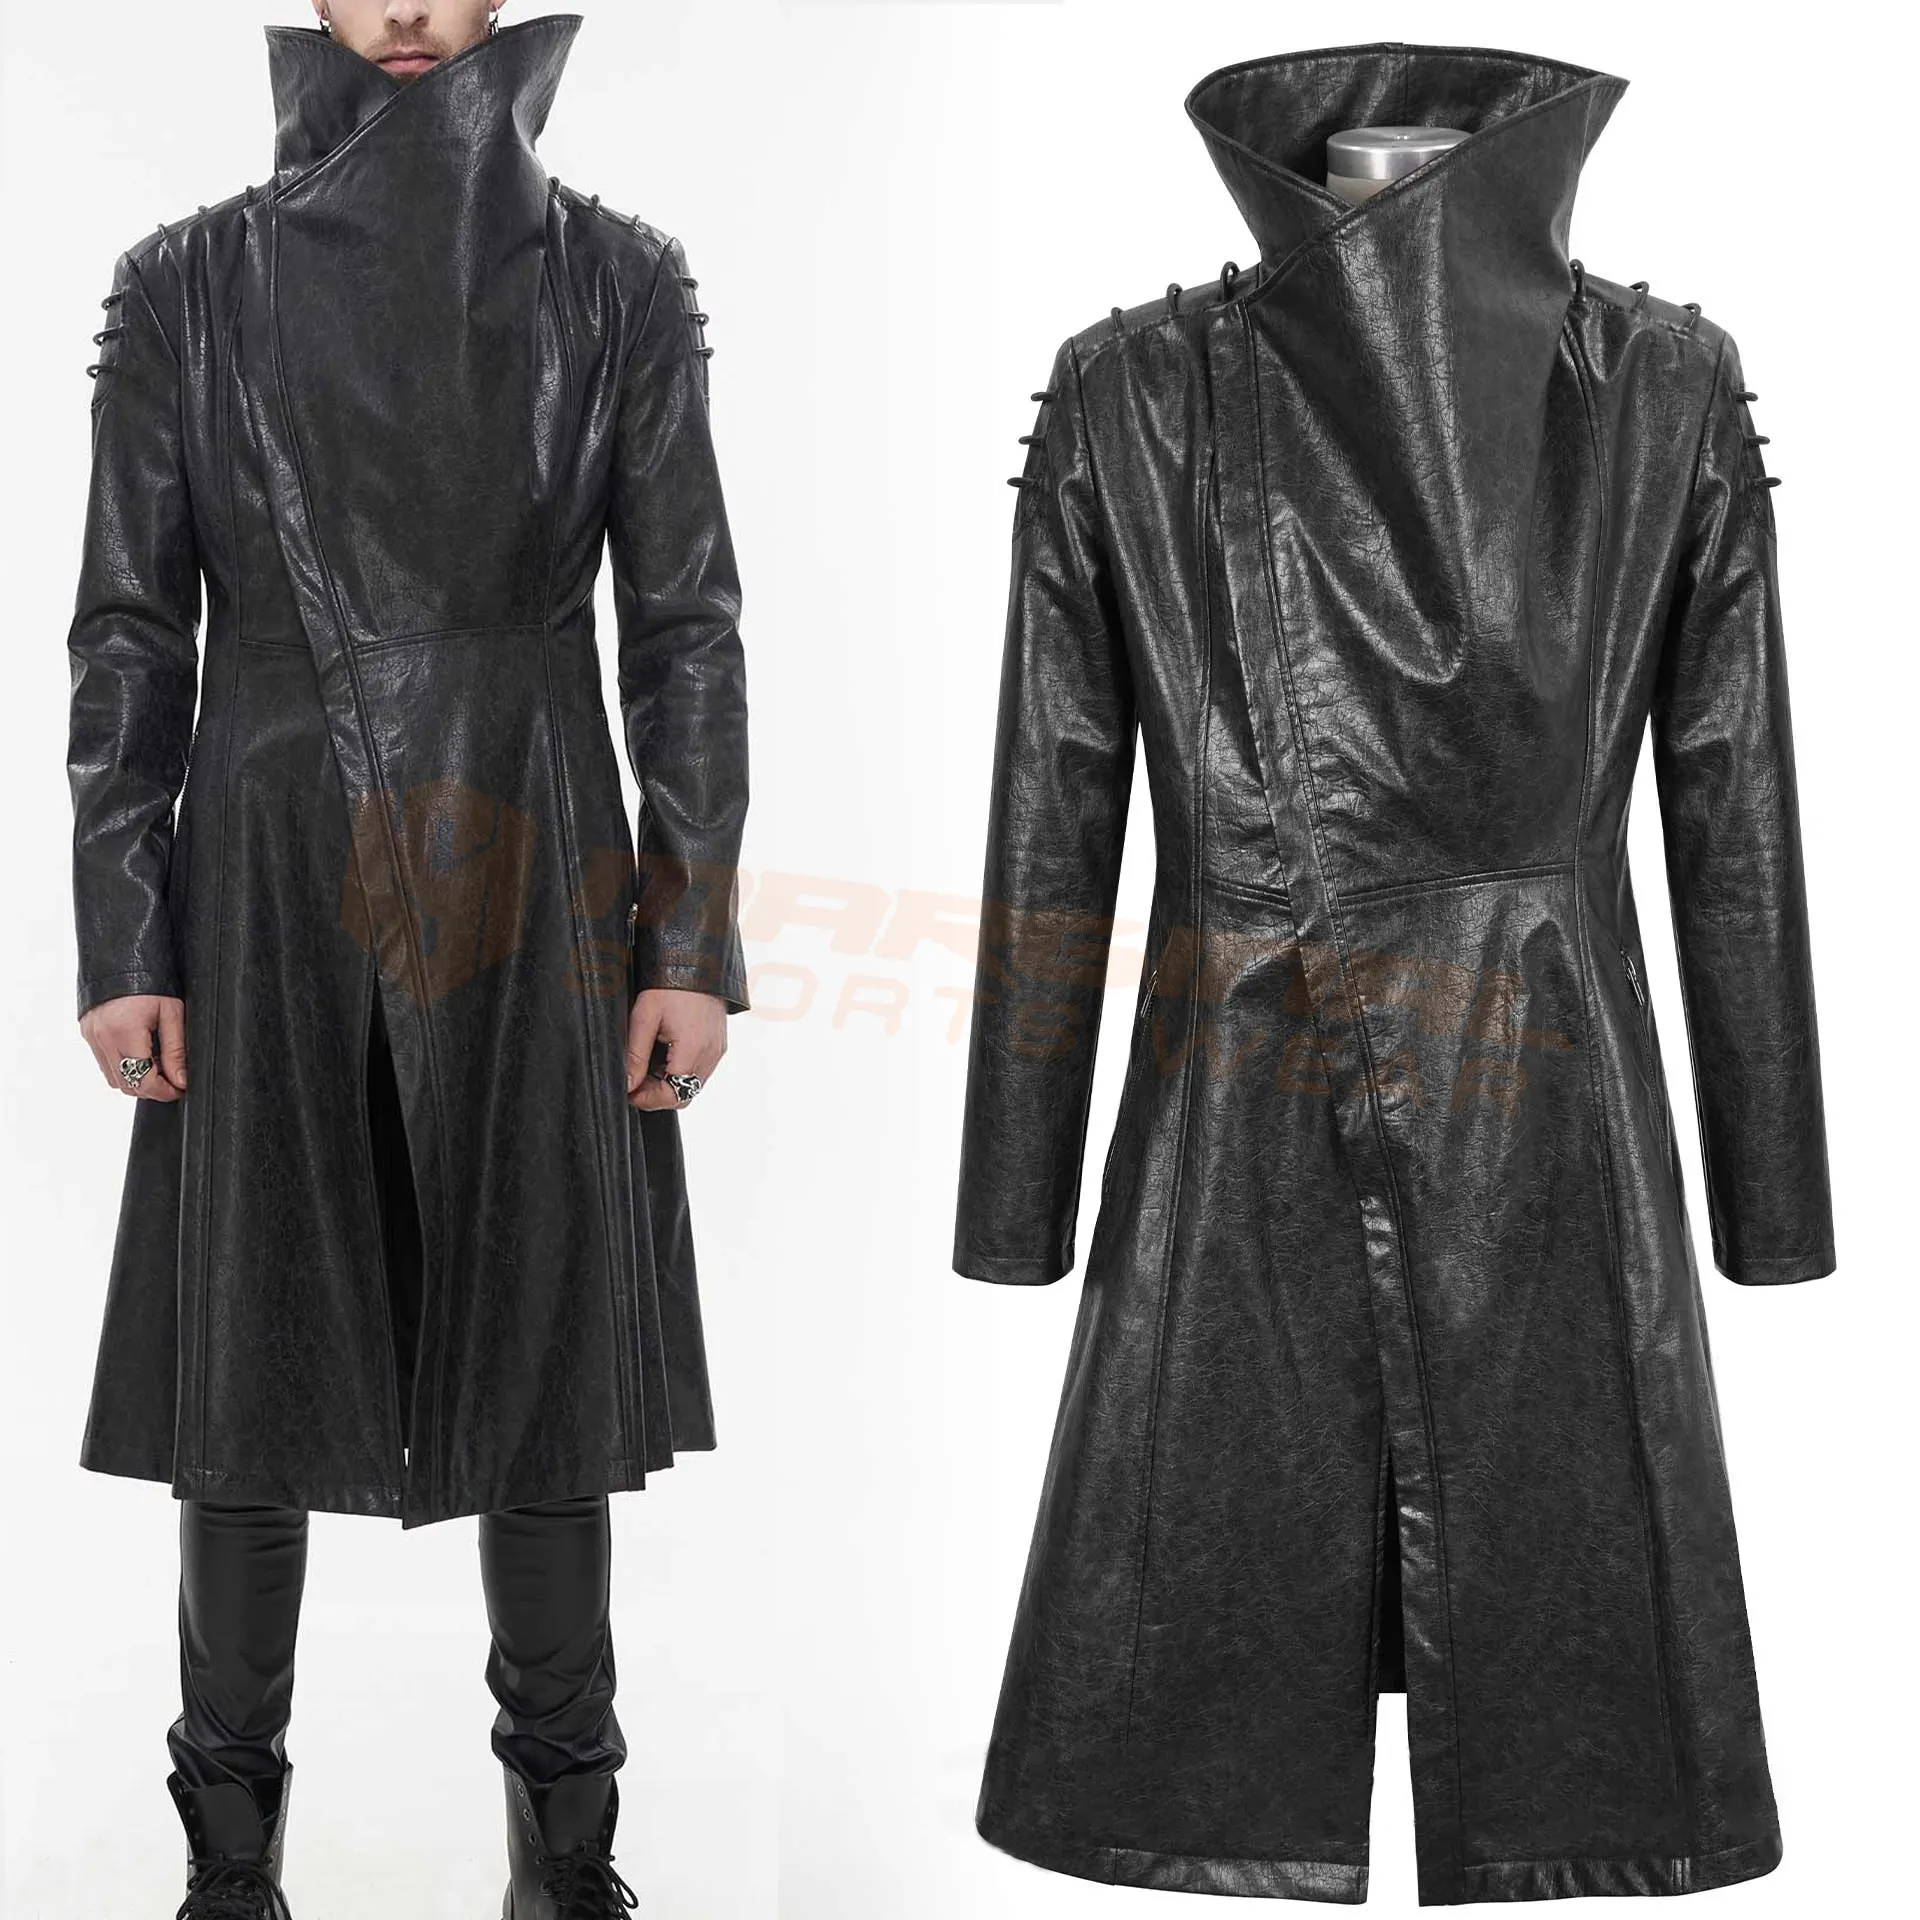 ملابس قوطية للرجال معطف من الجلد الأسود بنمط قوطي معطف أسود للرجال معطف طويل قوطي من الجلد الصناعي